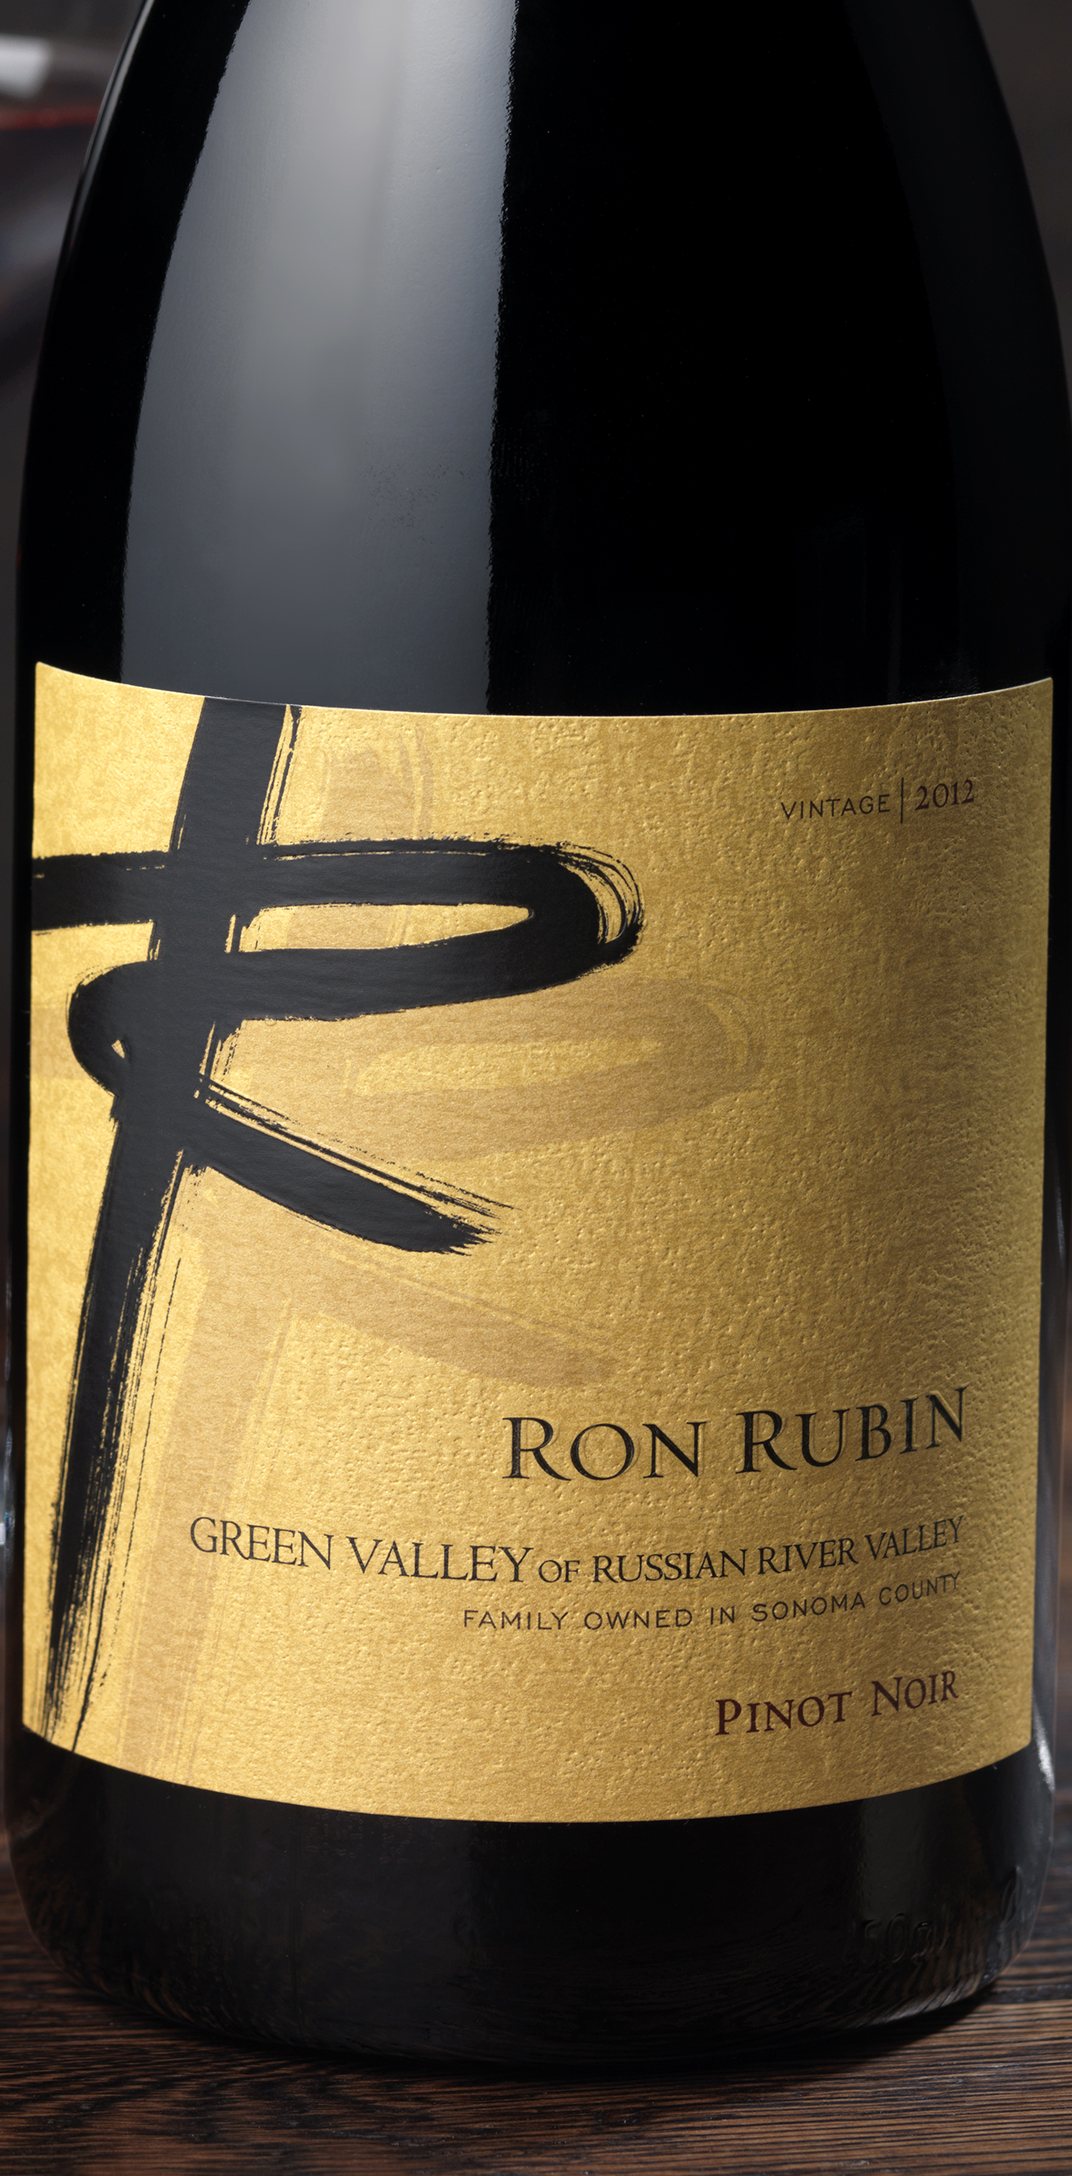 Ron Rubin Winery